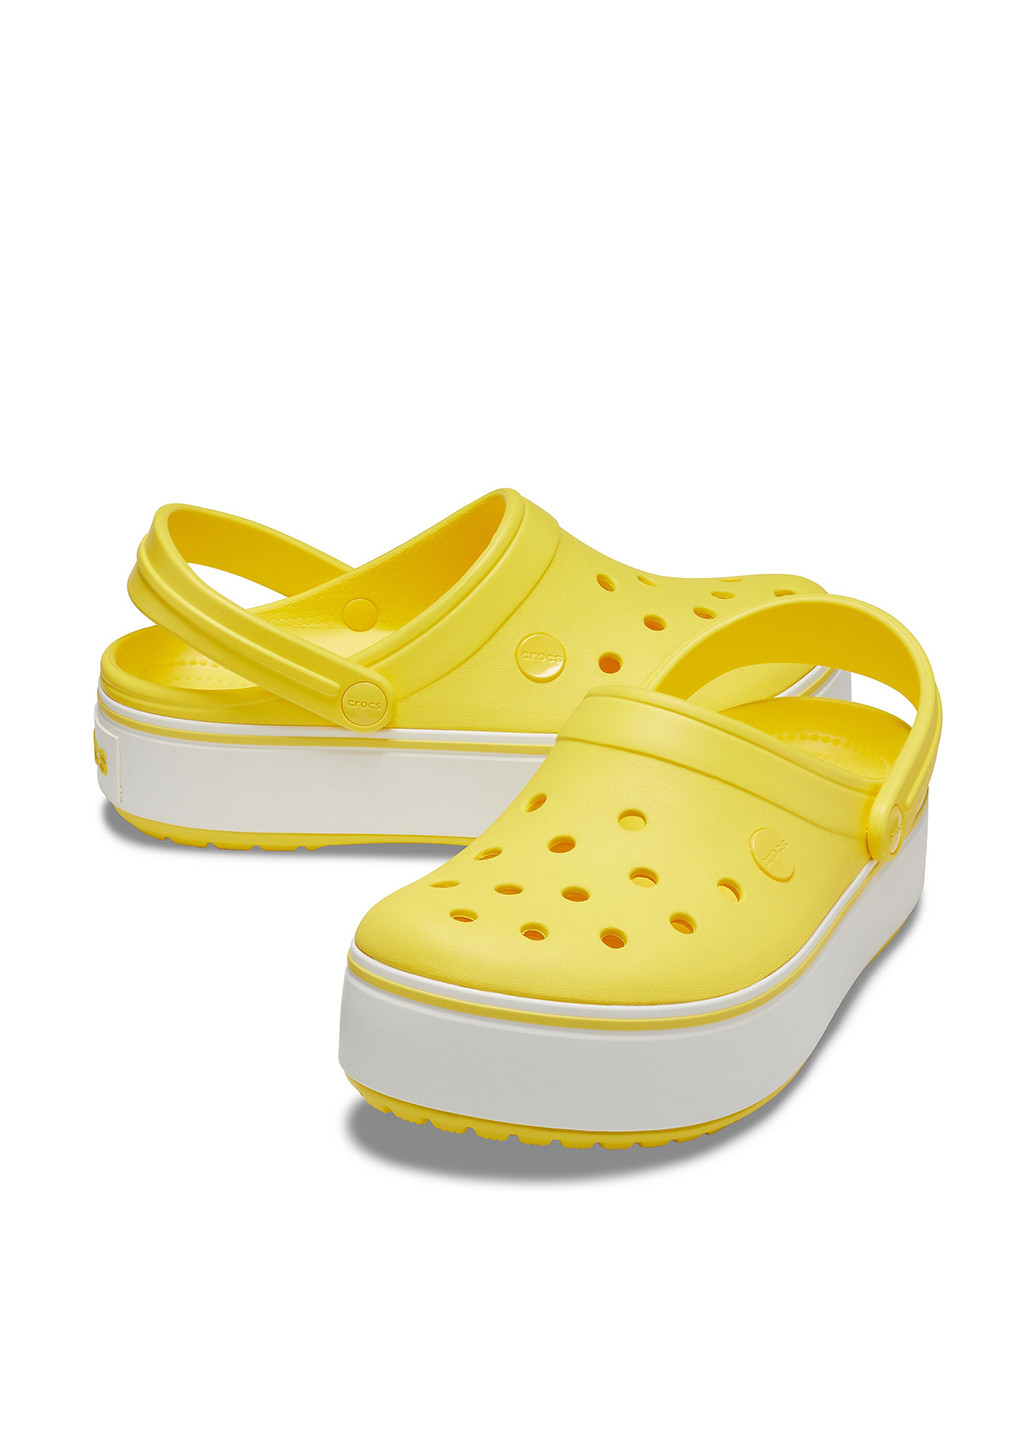 Желтые сабо Crocs на платформе с перфорацией